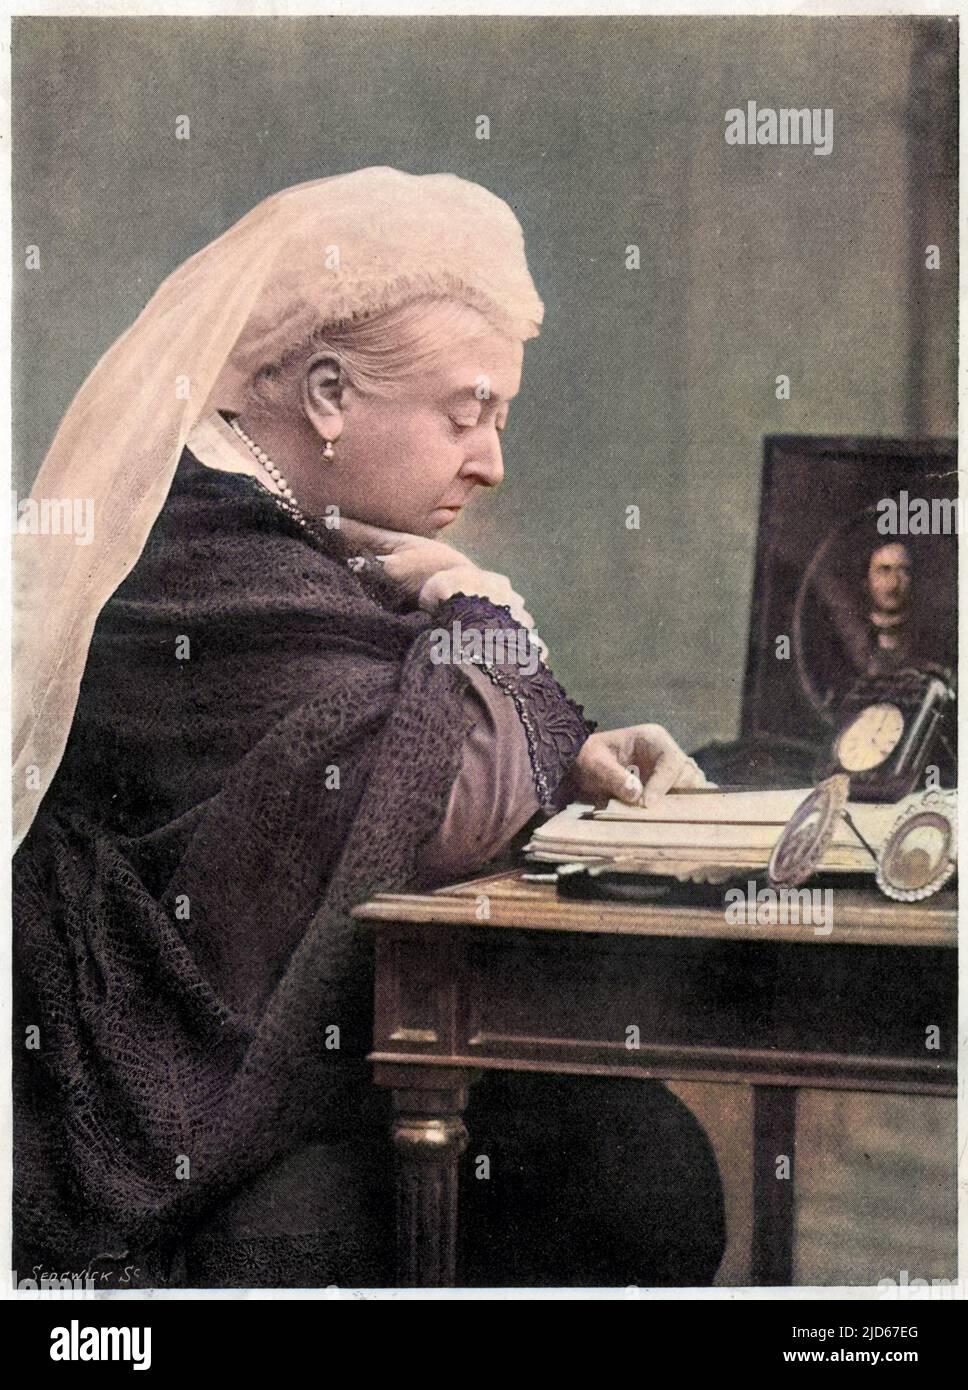 Königin Victoria (1819 - 1901), die im Jahr 1890s an ihrem Schreibtisch saß, mit einem Bild ihres verstorbenen Ehemannes Prinz Albert an ihrer Seite. Kolorierte Version von : 10018810 Datum: c. 1890s Stockfoto